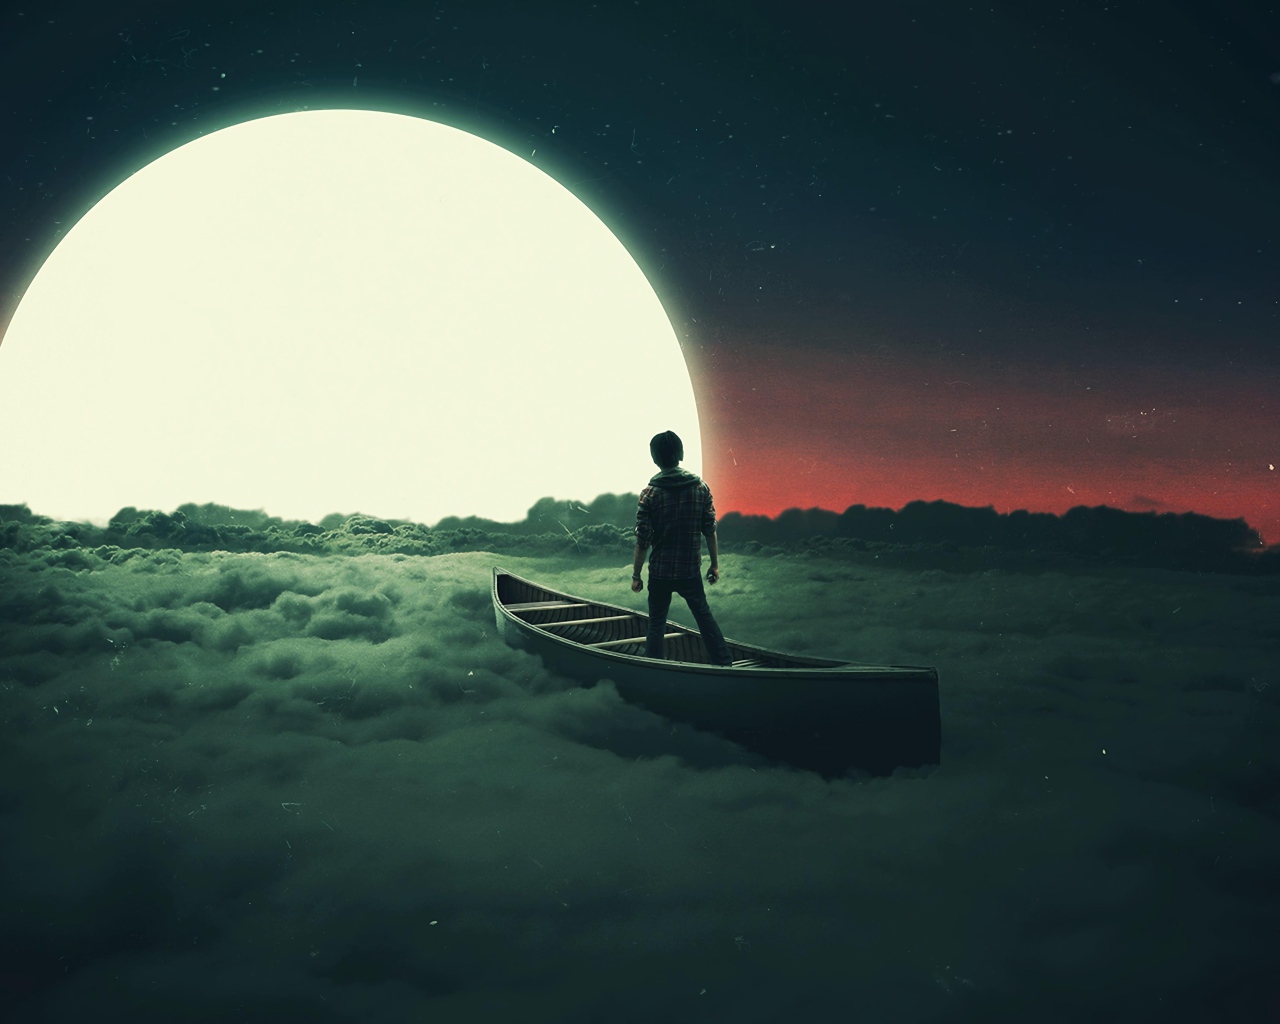 Мальчик плывет на лодке по облакам к луне